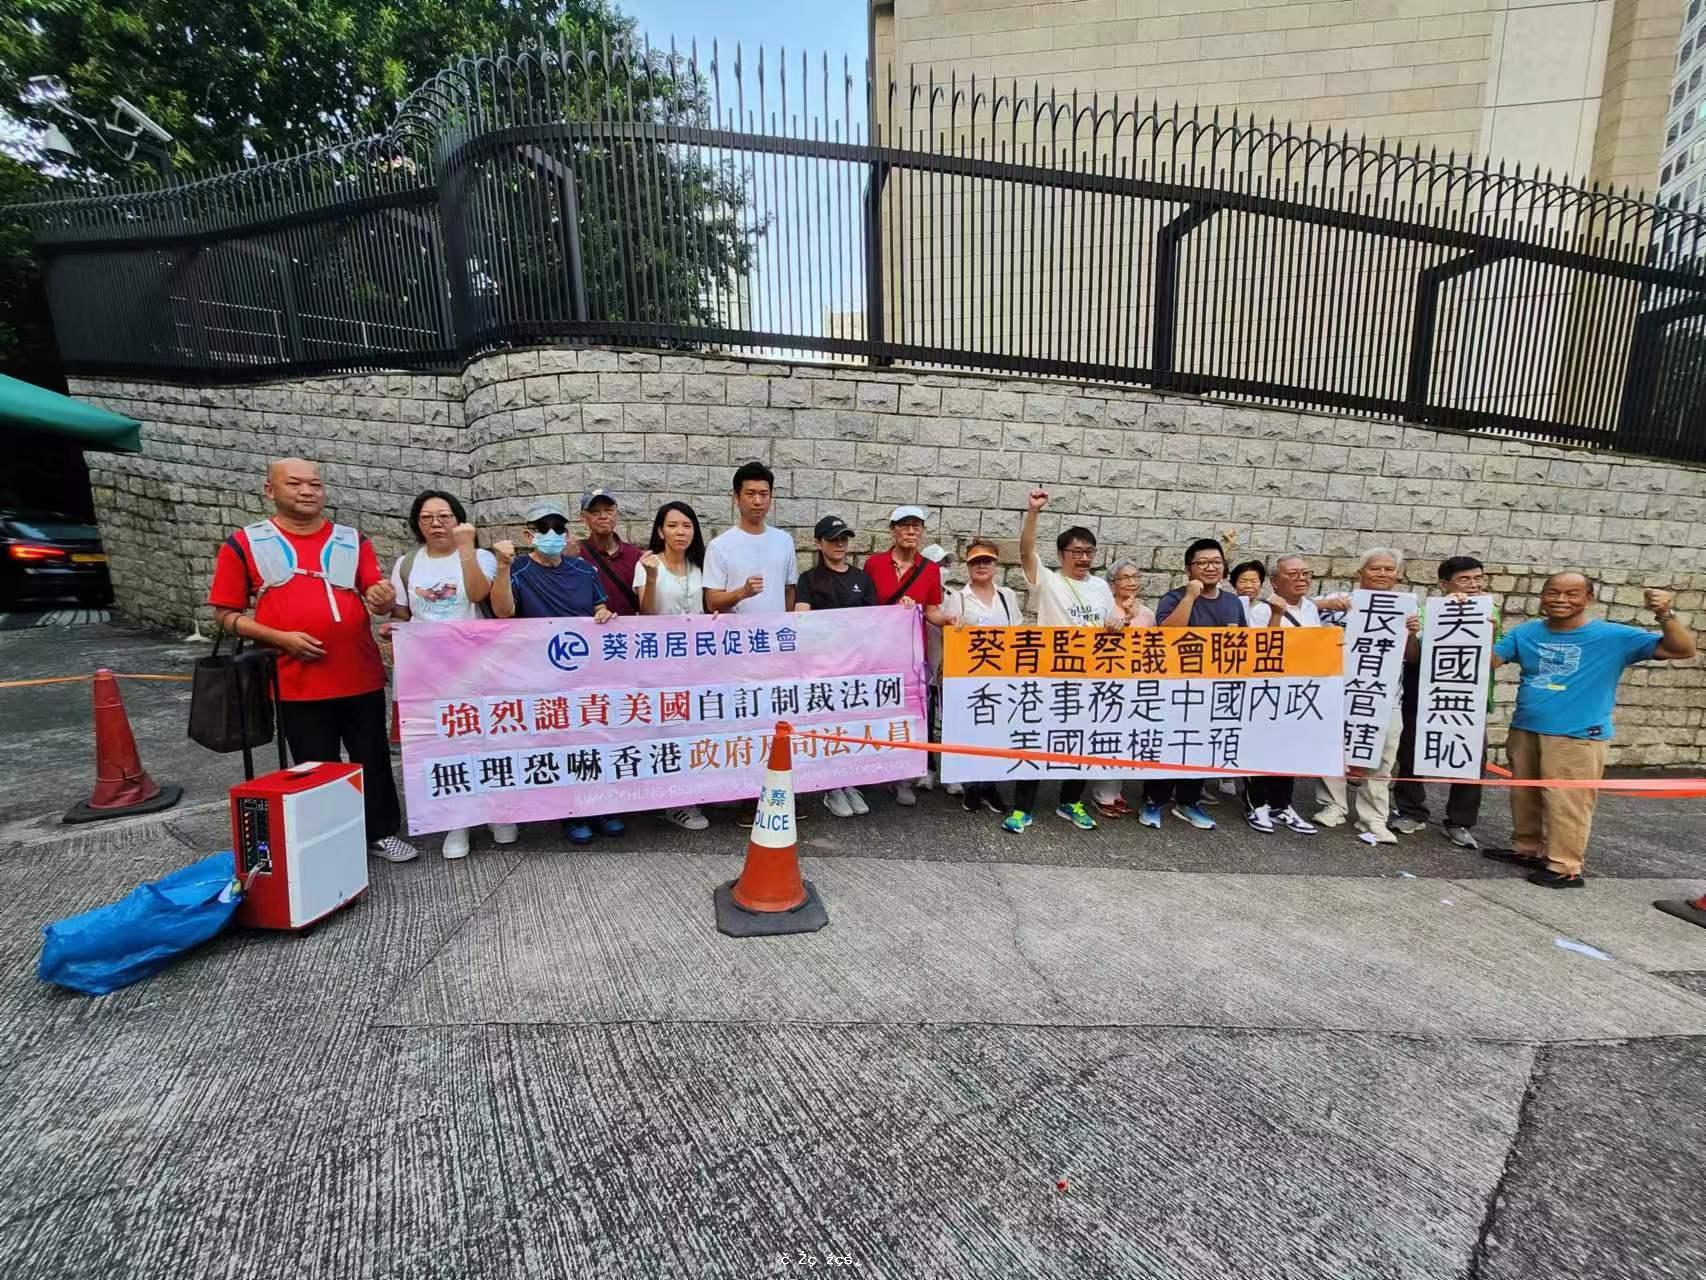 強烈譴責美國自訂制裁法例，無理恐嚇香港政府及司法人員